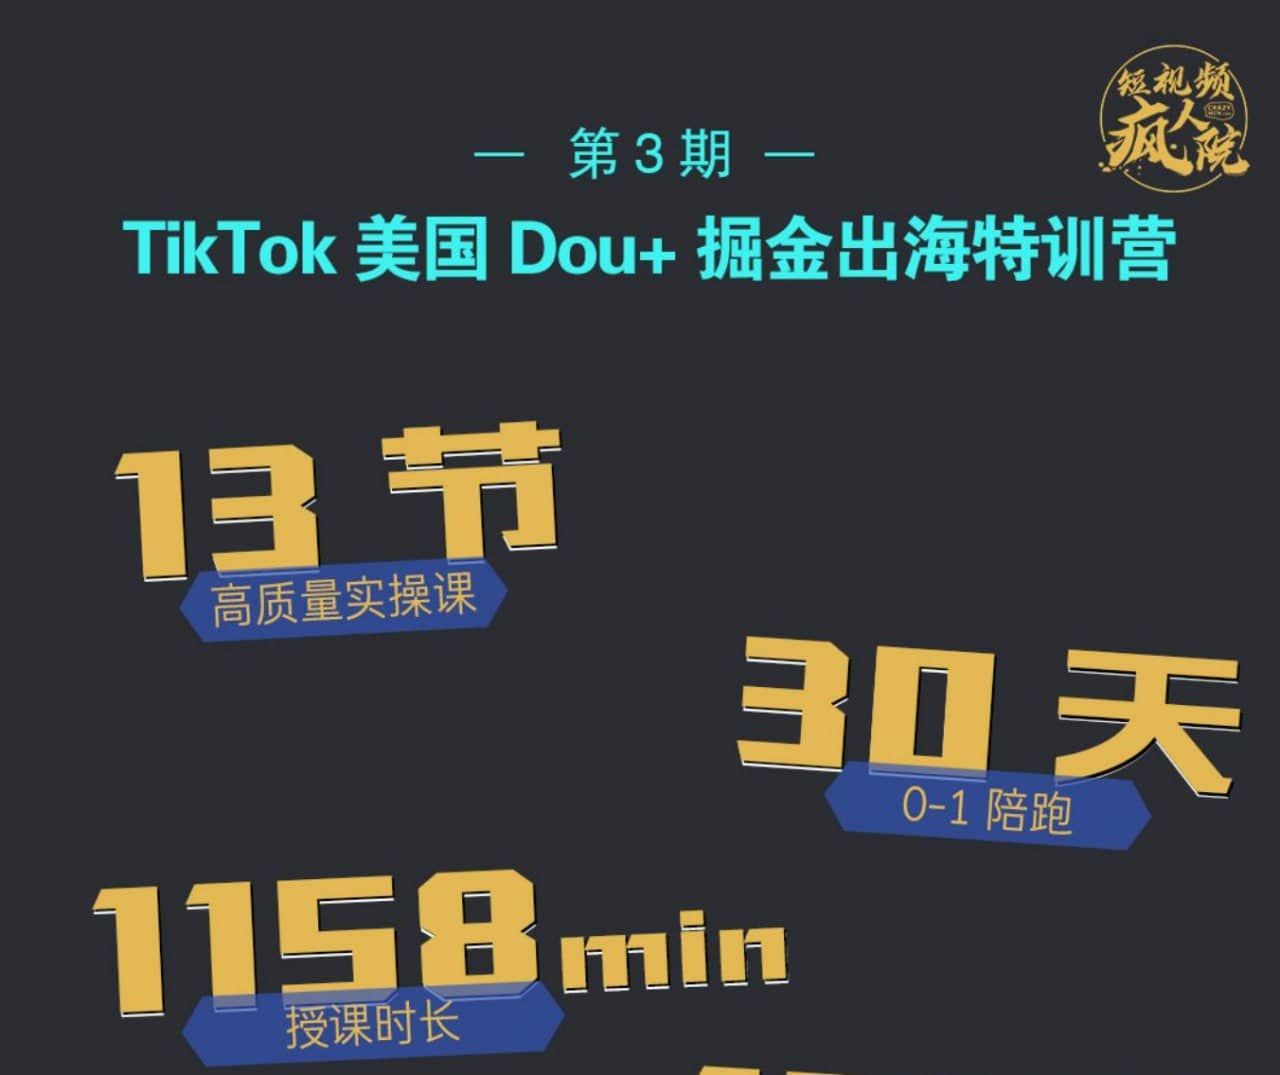 【短视频疯人院】TikTok Dou+特训营第三期